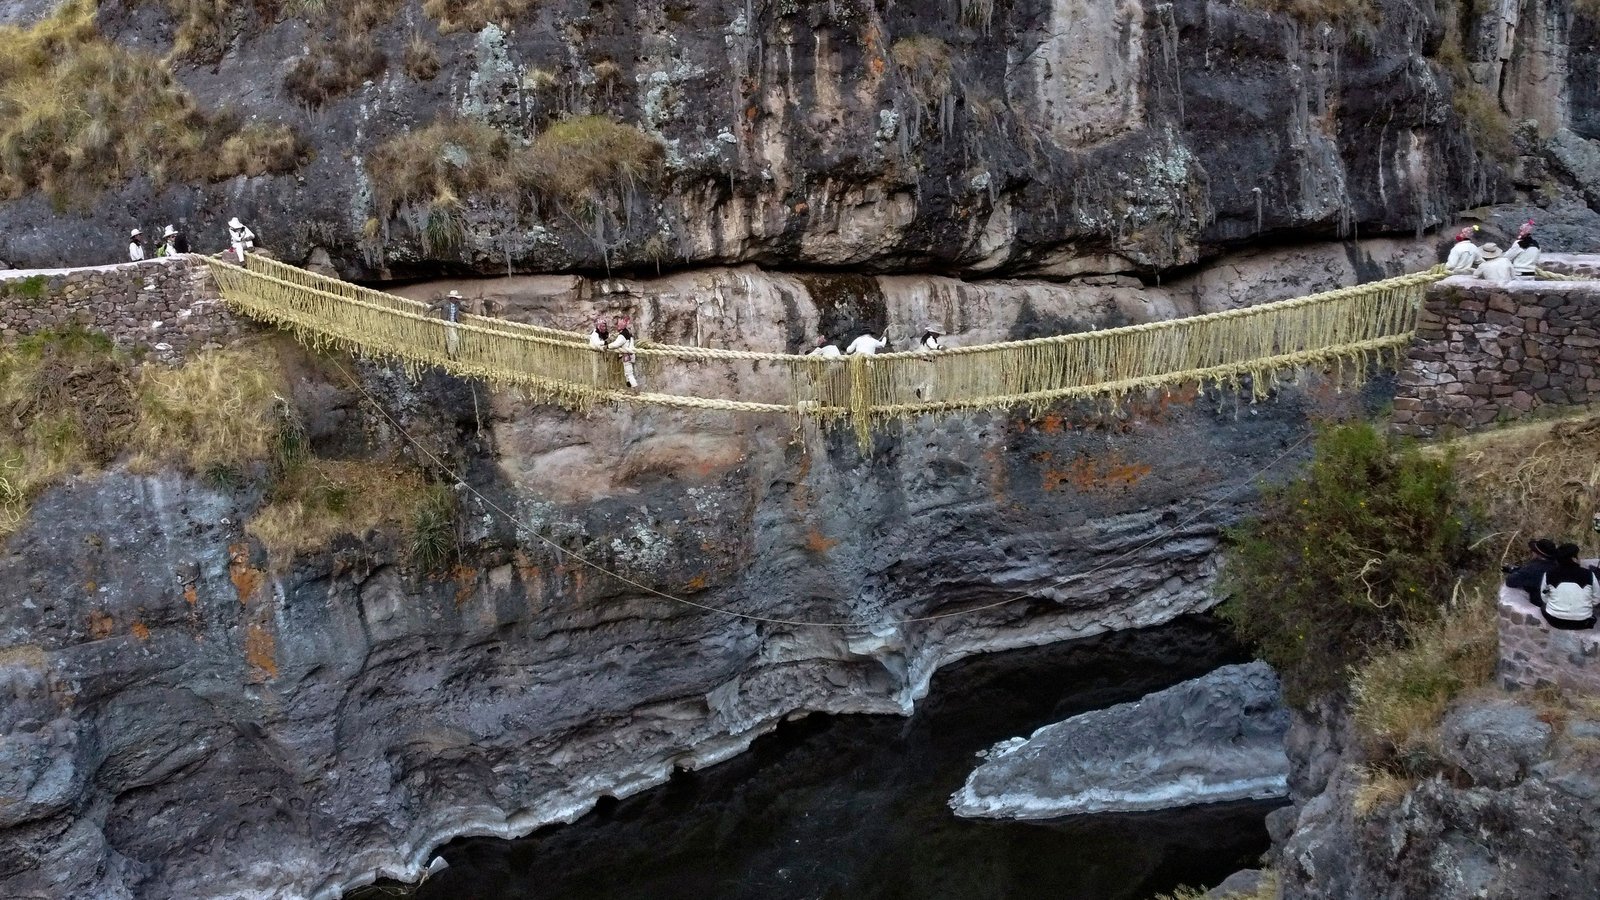 Defying gravity - repairing an Inca rope bridge